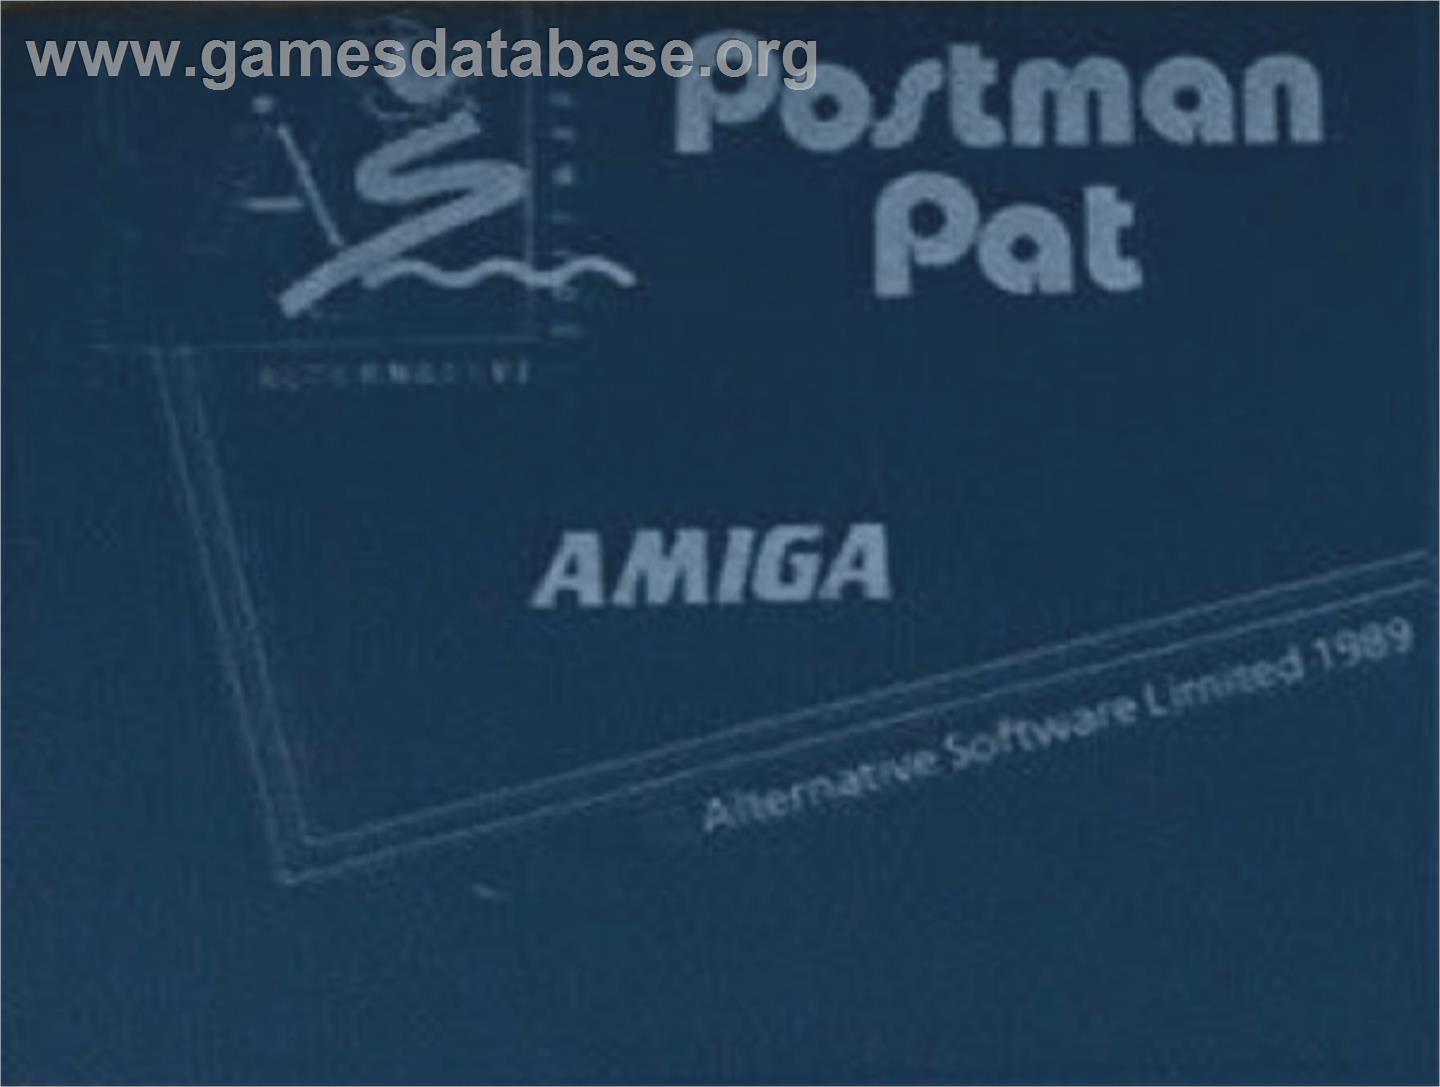 Postman Pat - Commodore Amiga - Artwork - Cartridge Top